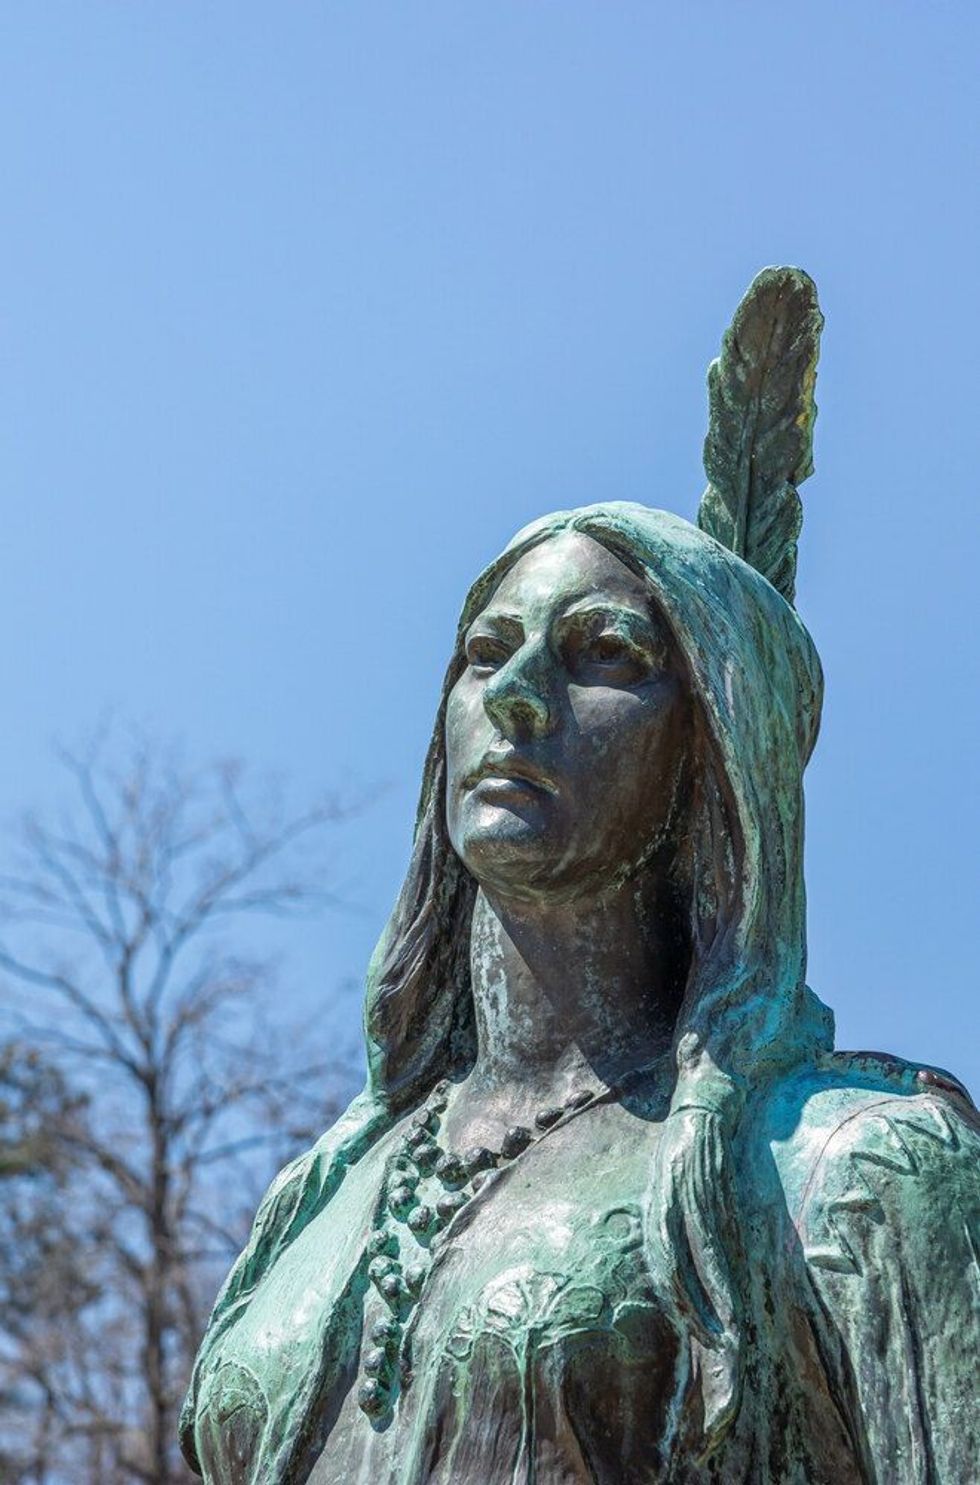 Closeup of Pocahontas face on bronze statue against blue sky.